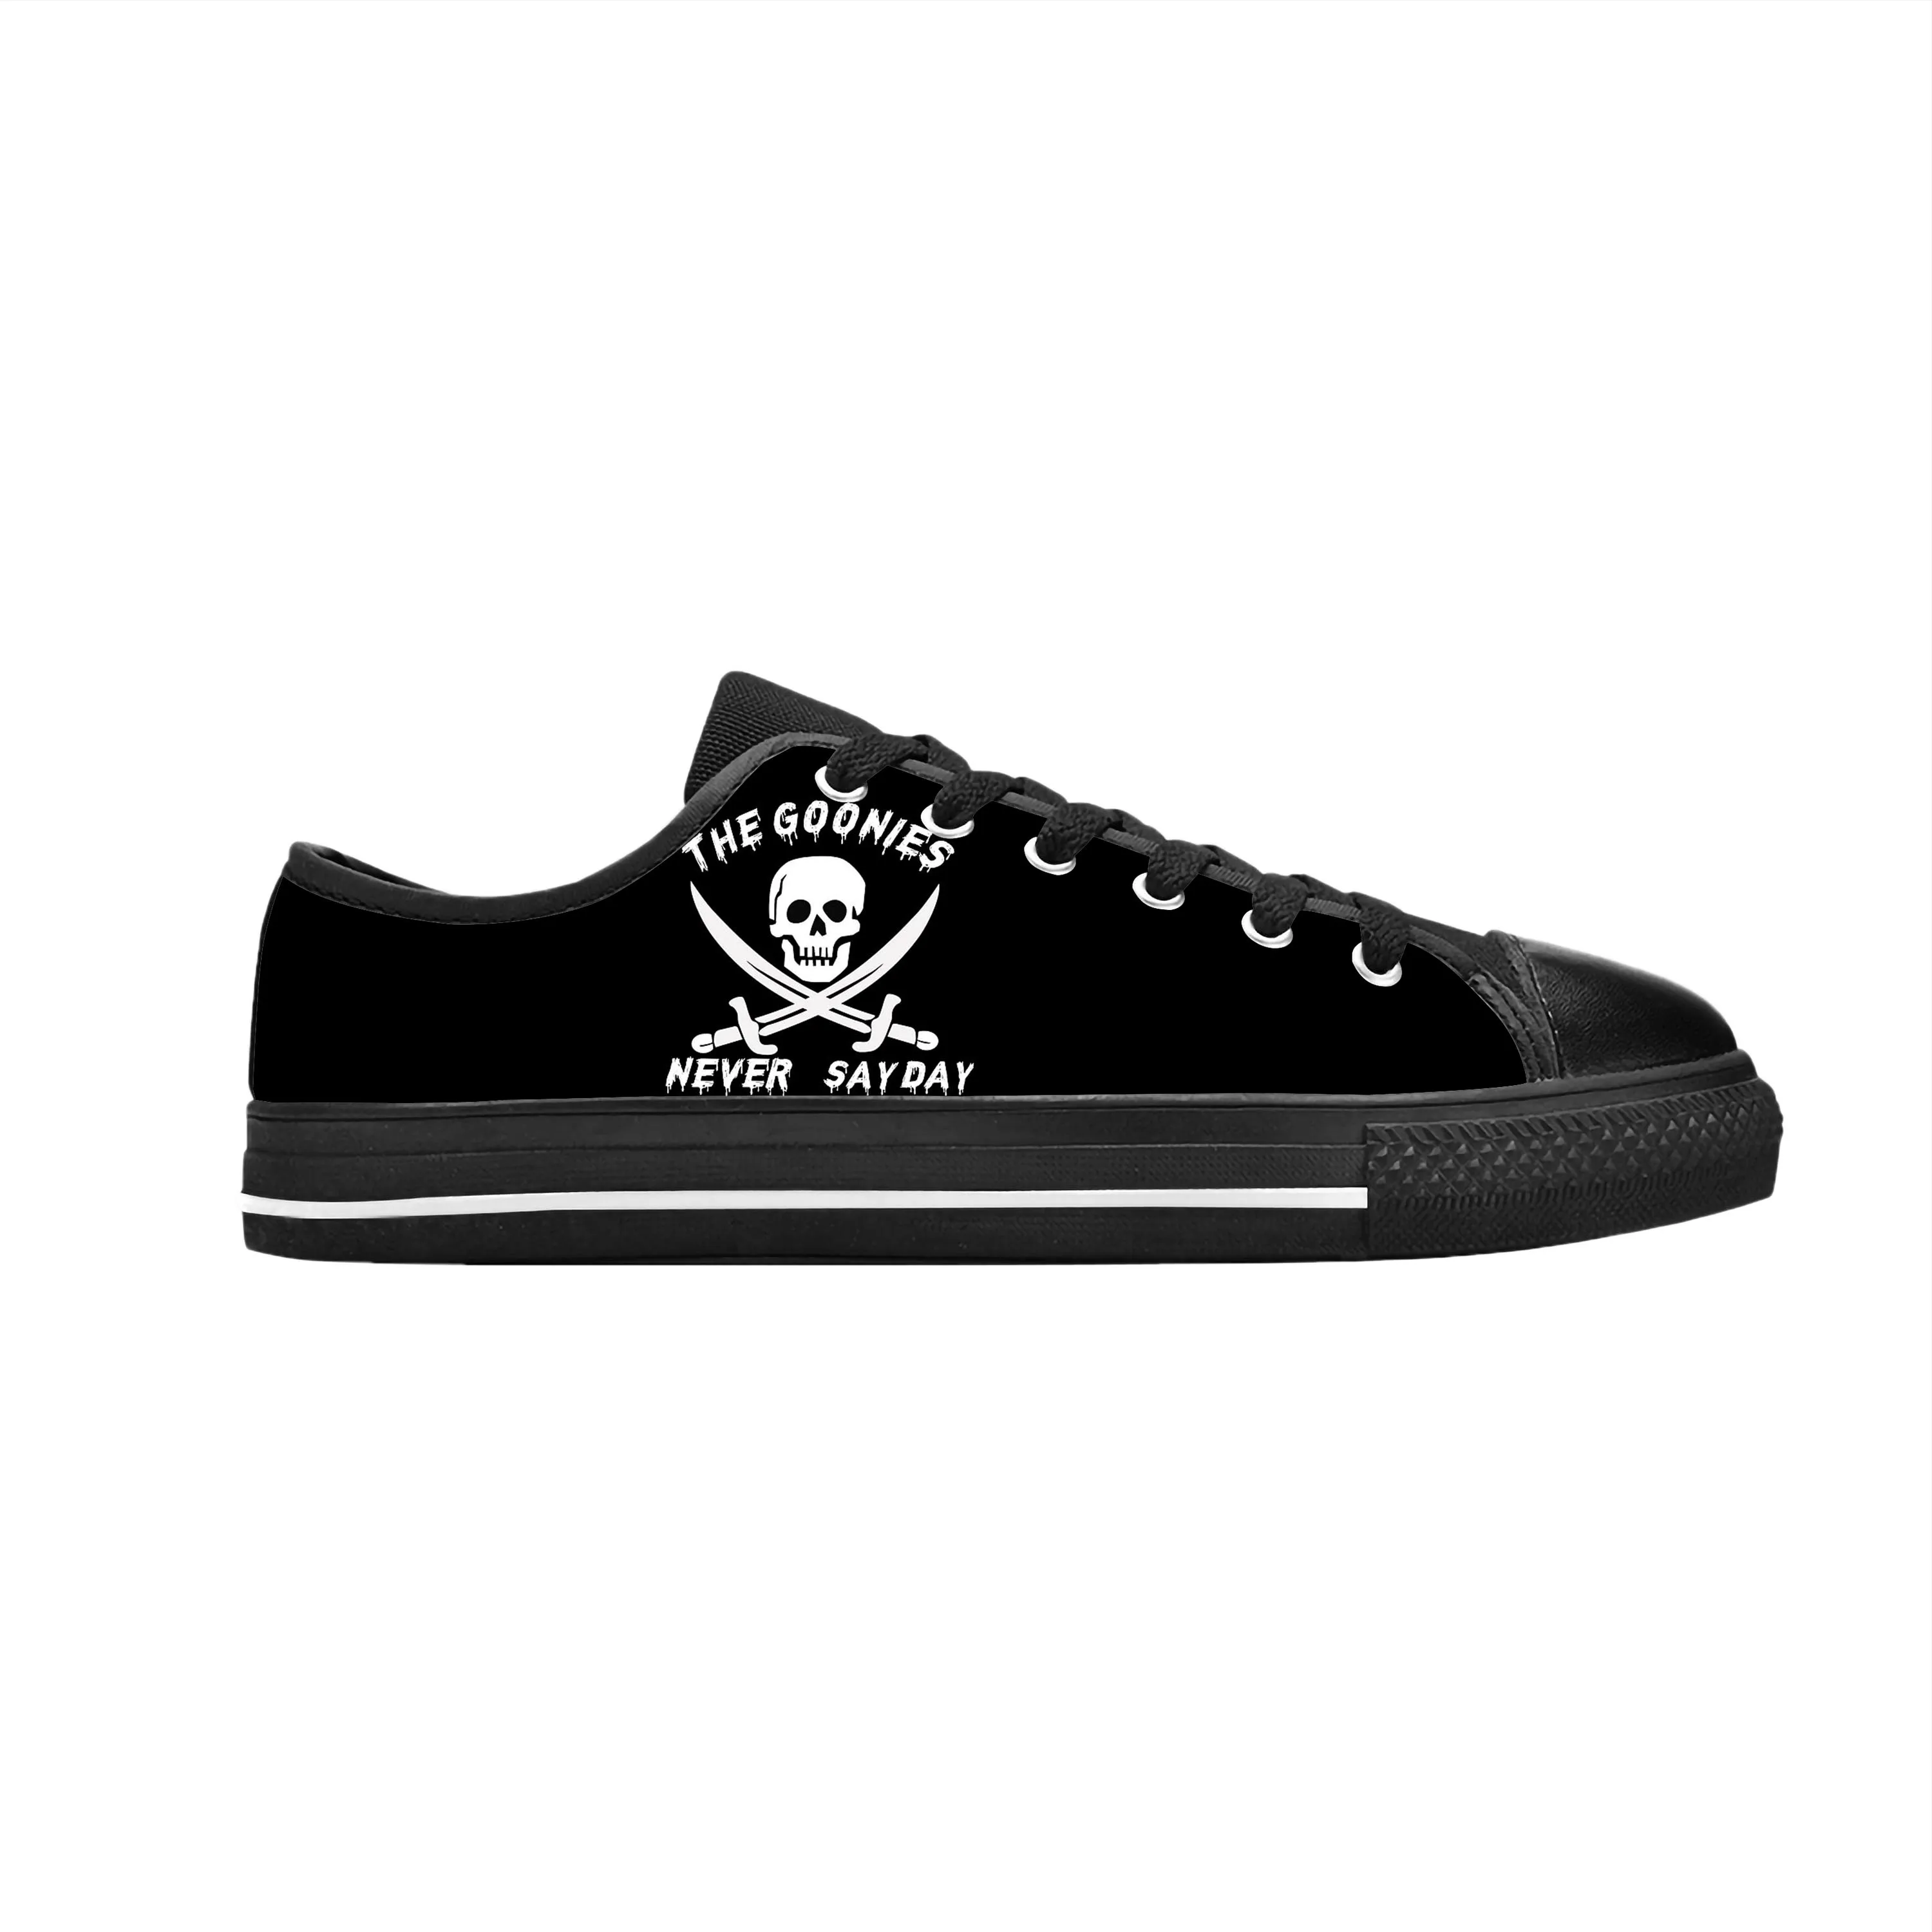 

Кроссовки goonet Never Say Die Skull Skeleton пиратские готические повседневные тканевые туфли с низким верхом удобные дышащие кроссовки с 3D-принтом для мужчин и женщин